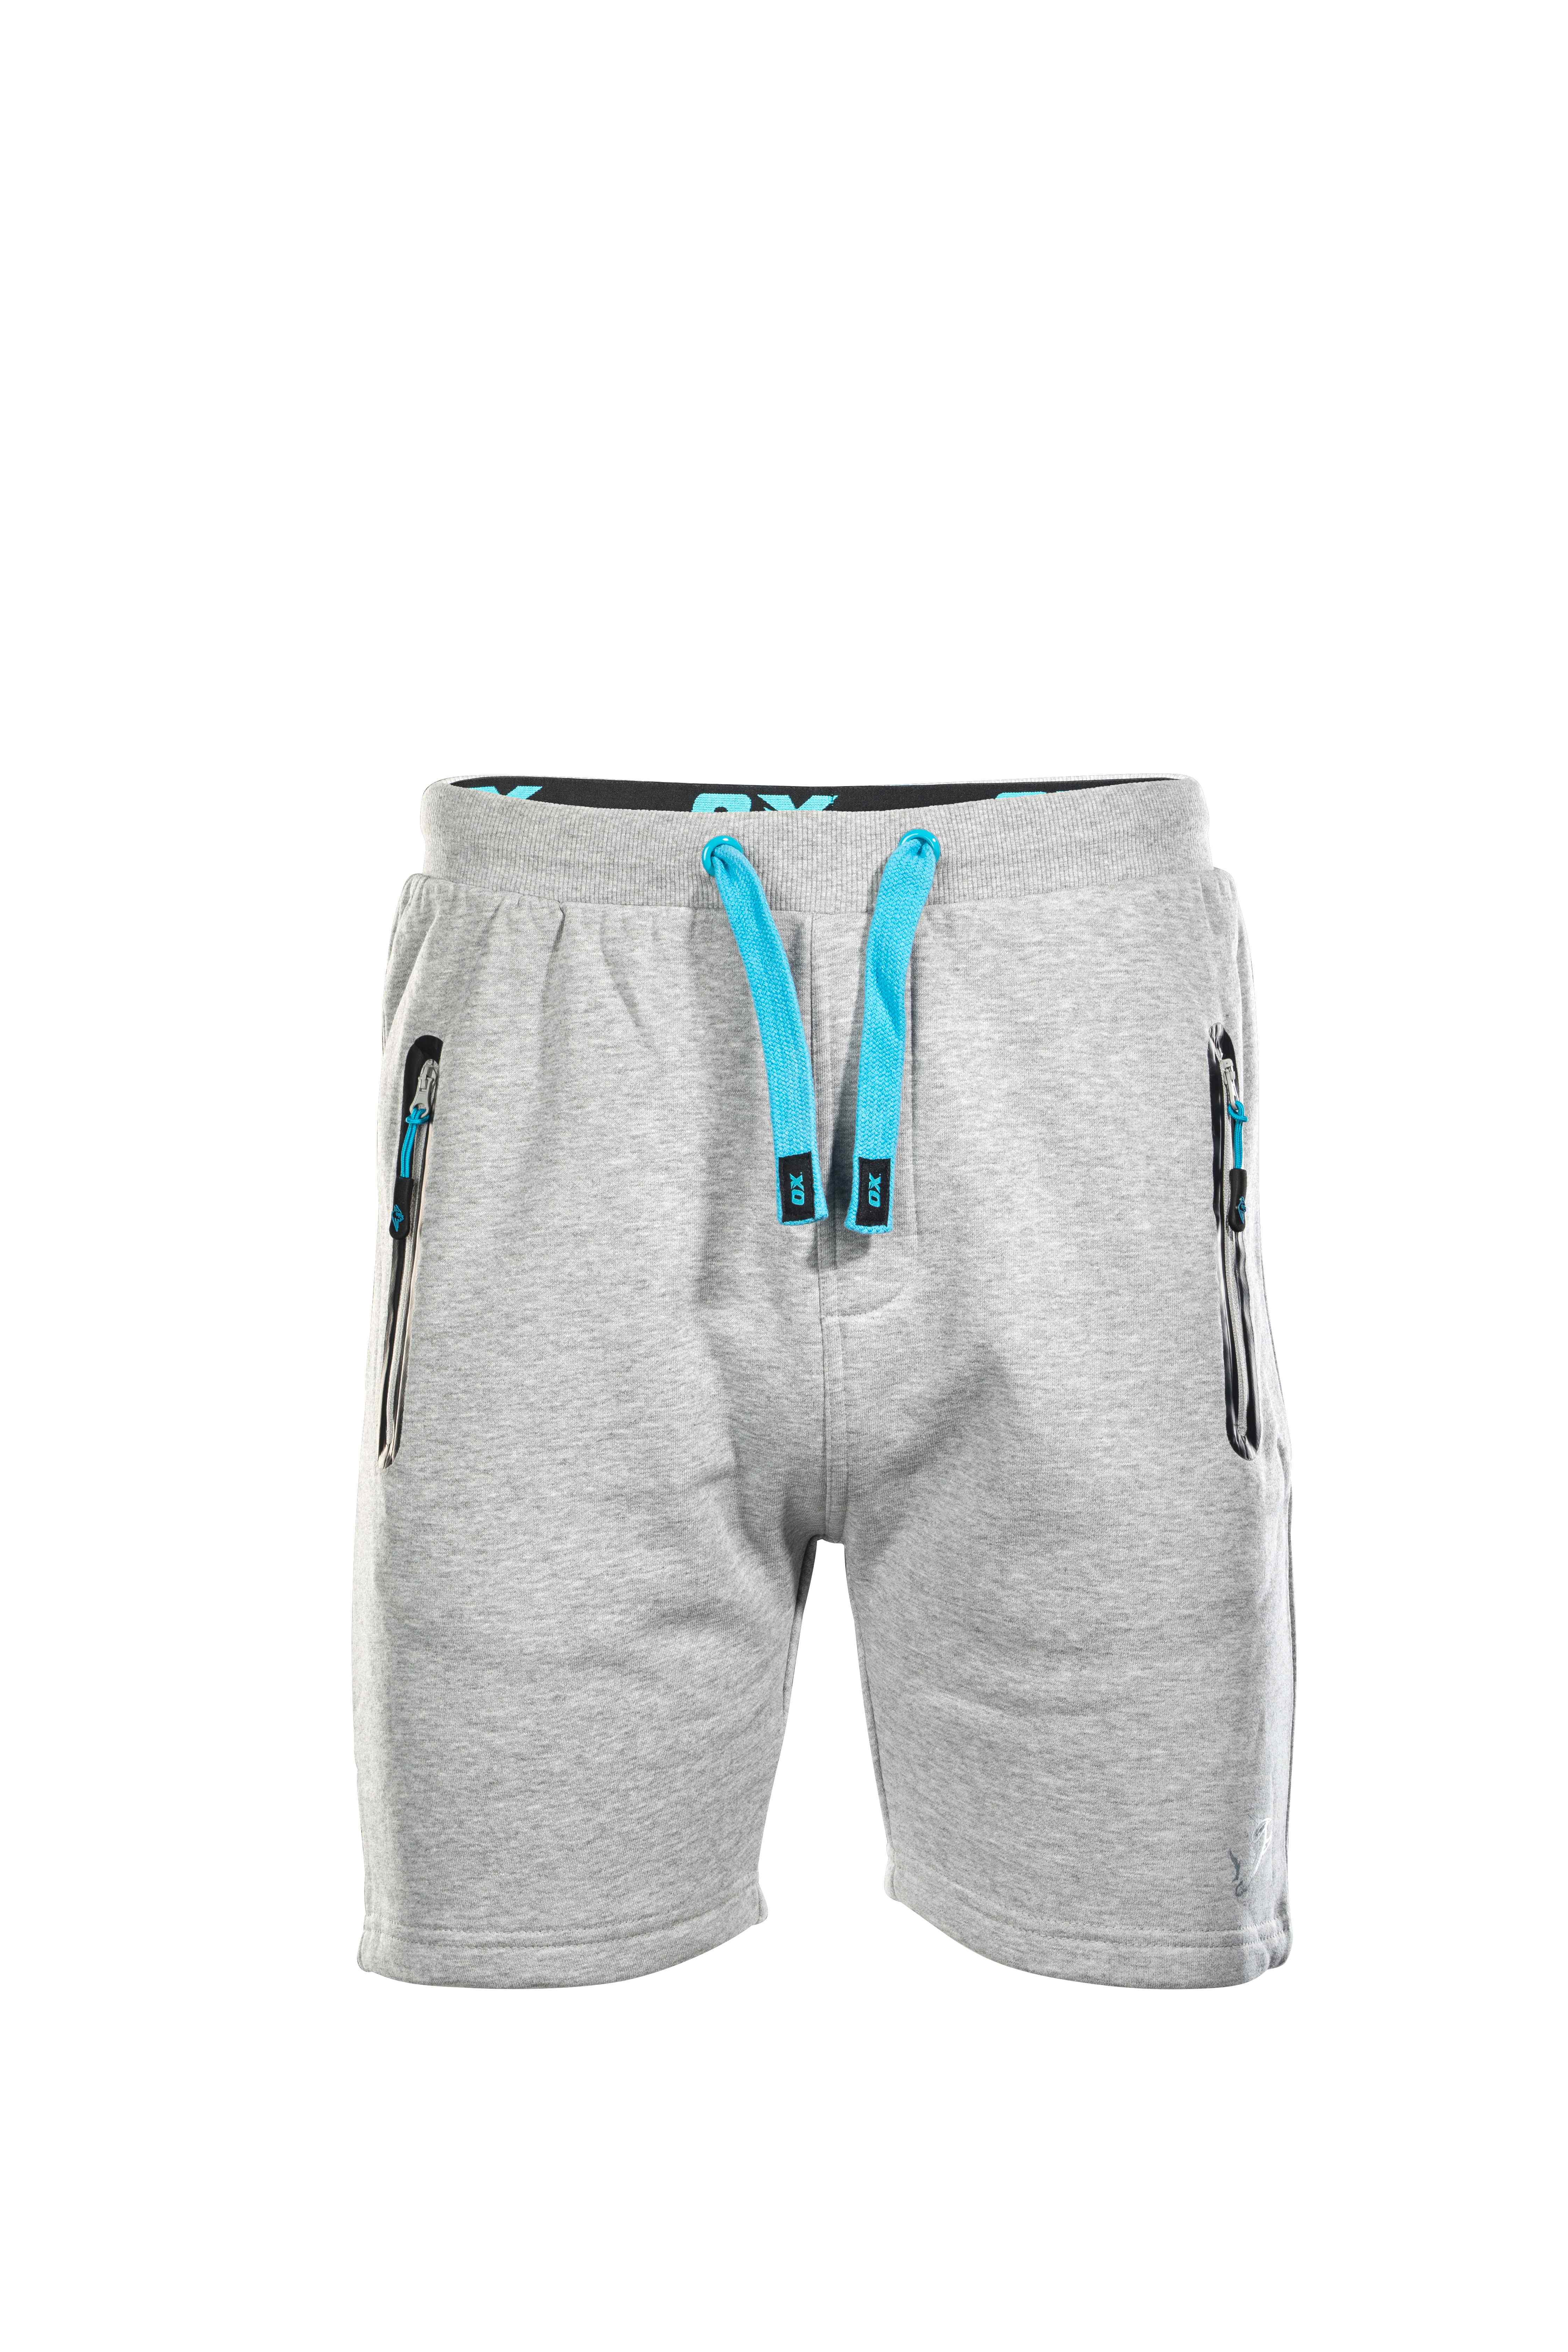 OX Jogger Shorts - Grey - 36